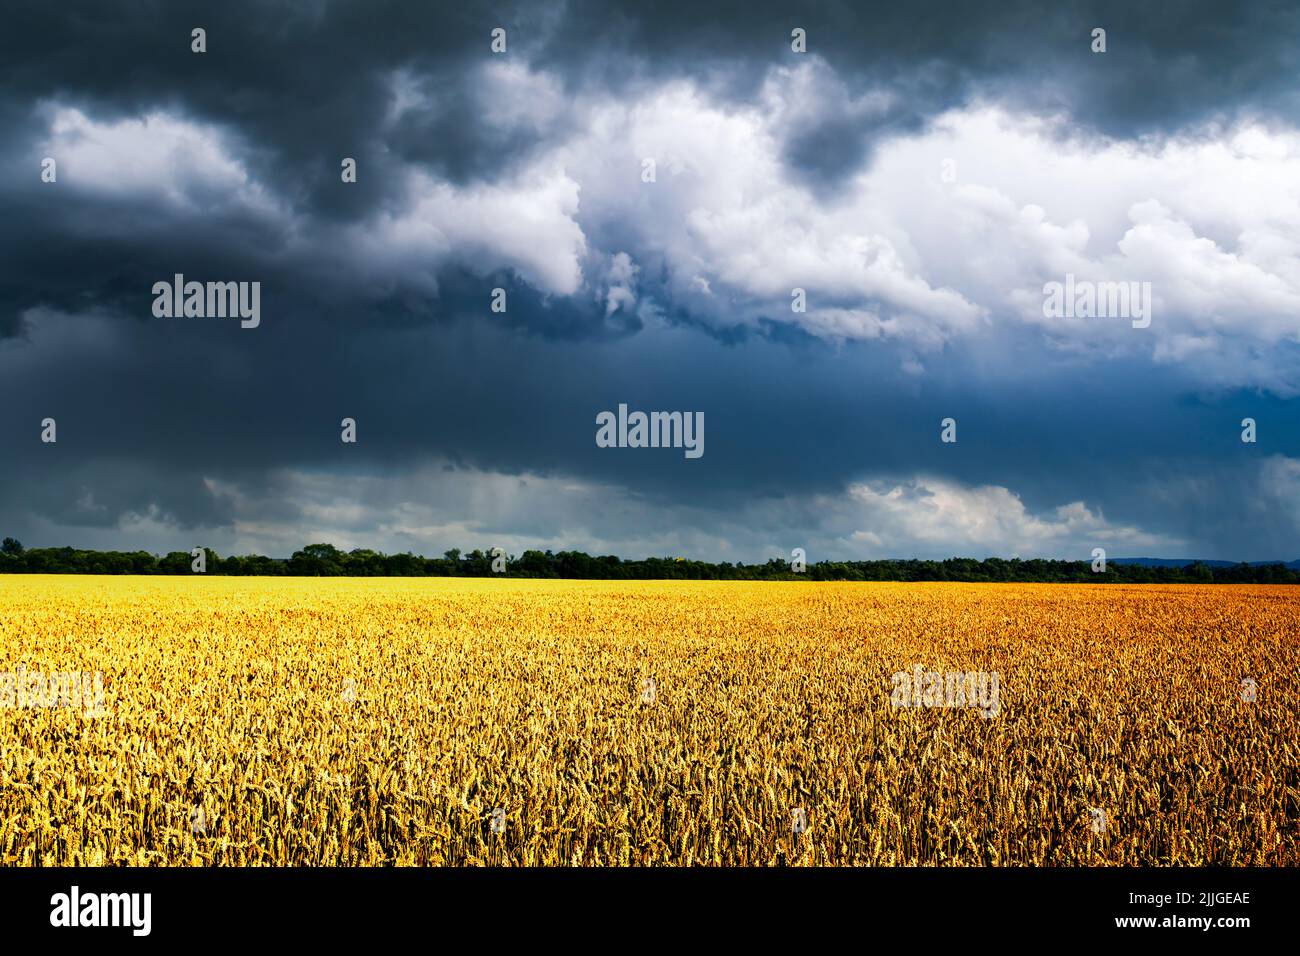 Des épillets de blé mûrs sur un terrain doré, dans un ciel sombre et spectaculaire avec des nuages pluvieux. Paysage industriel et nature. Ukraine, Europe Banque D'Images